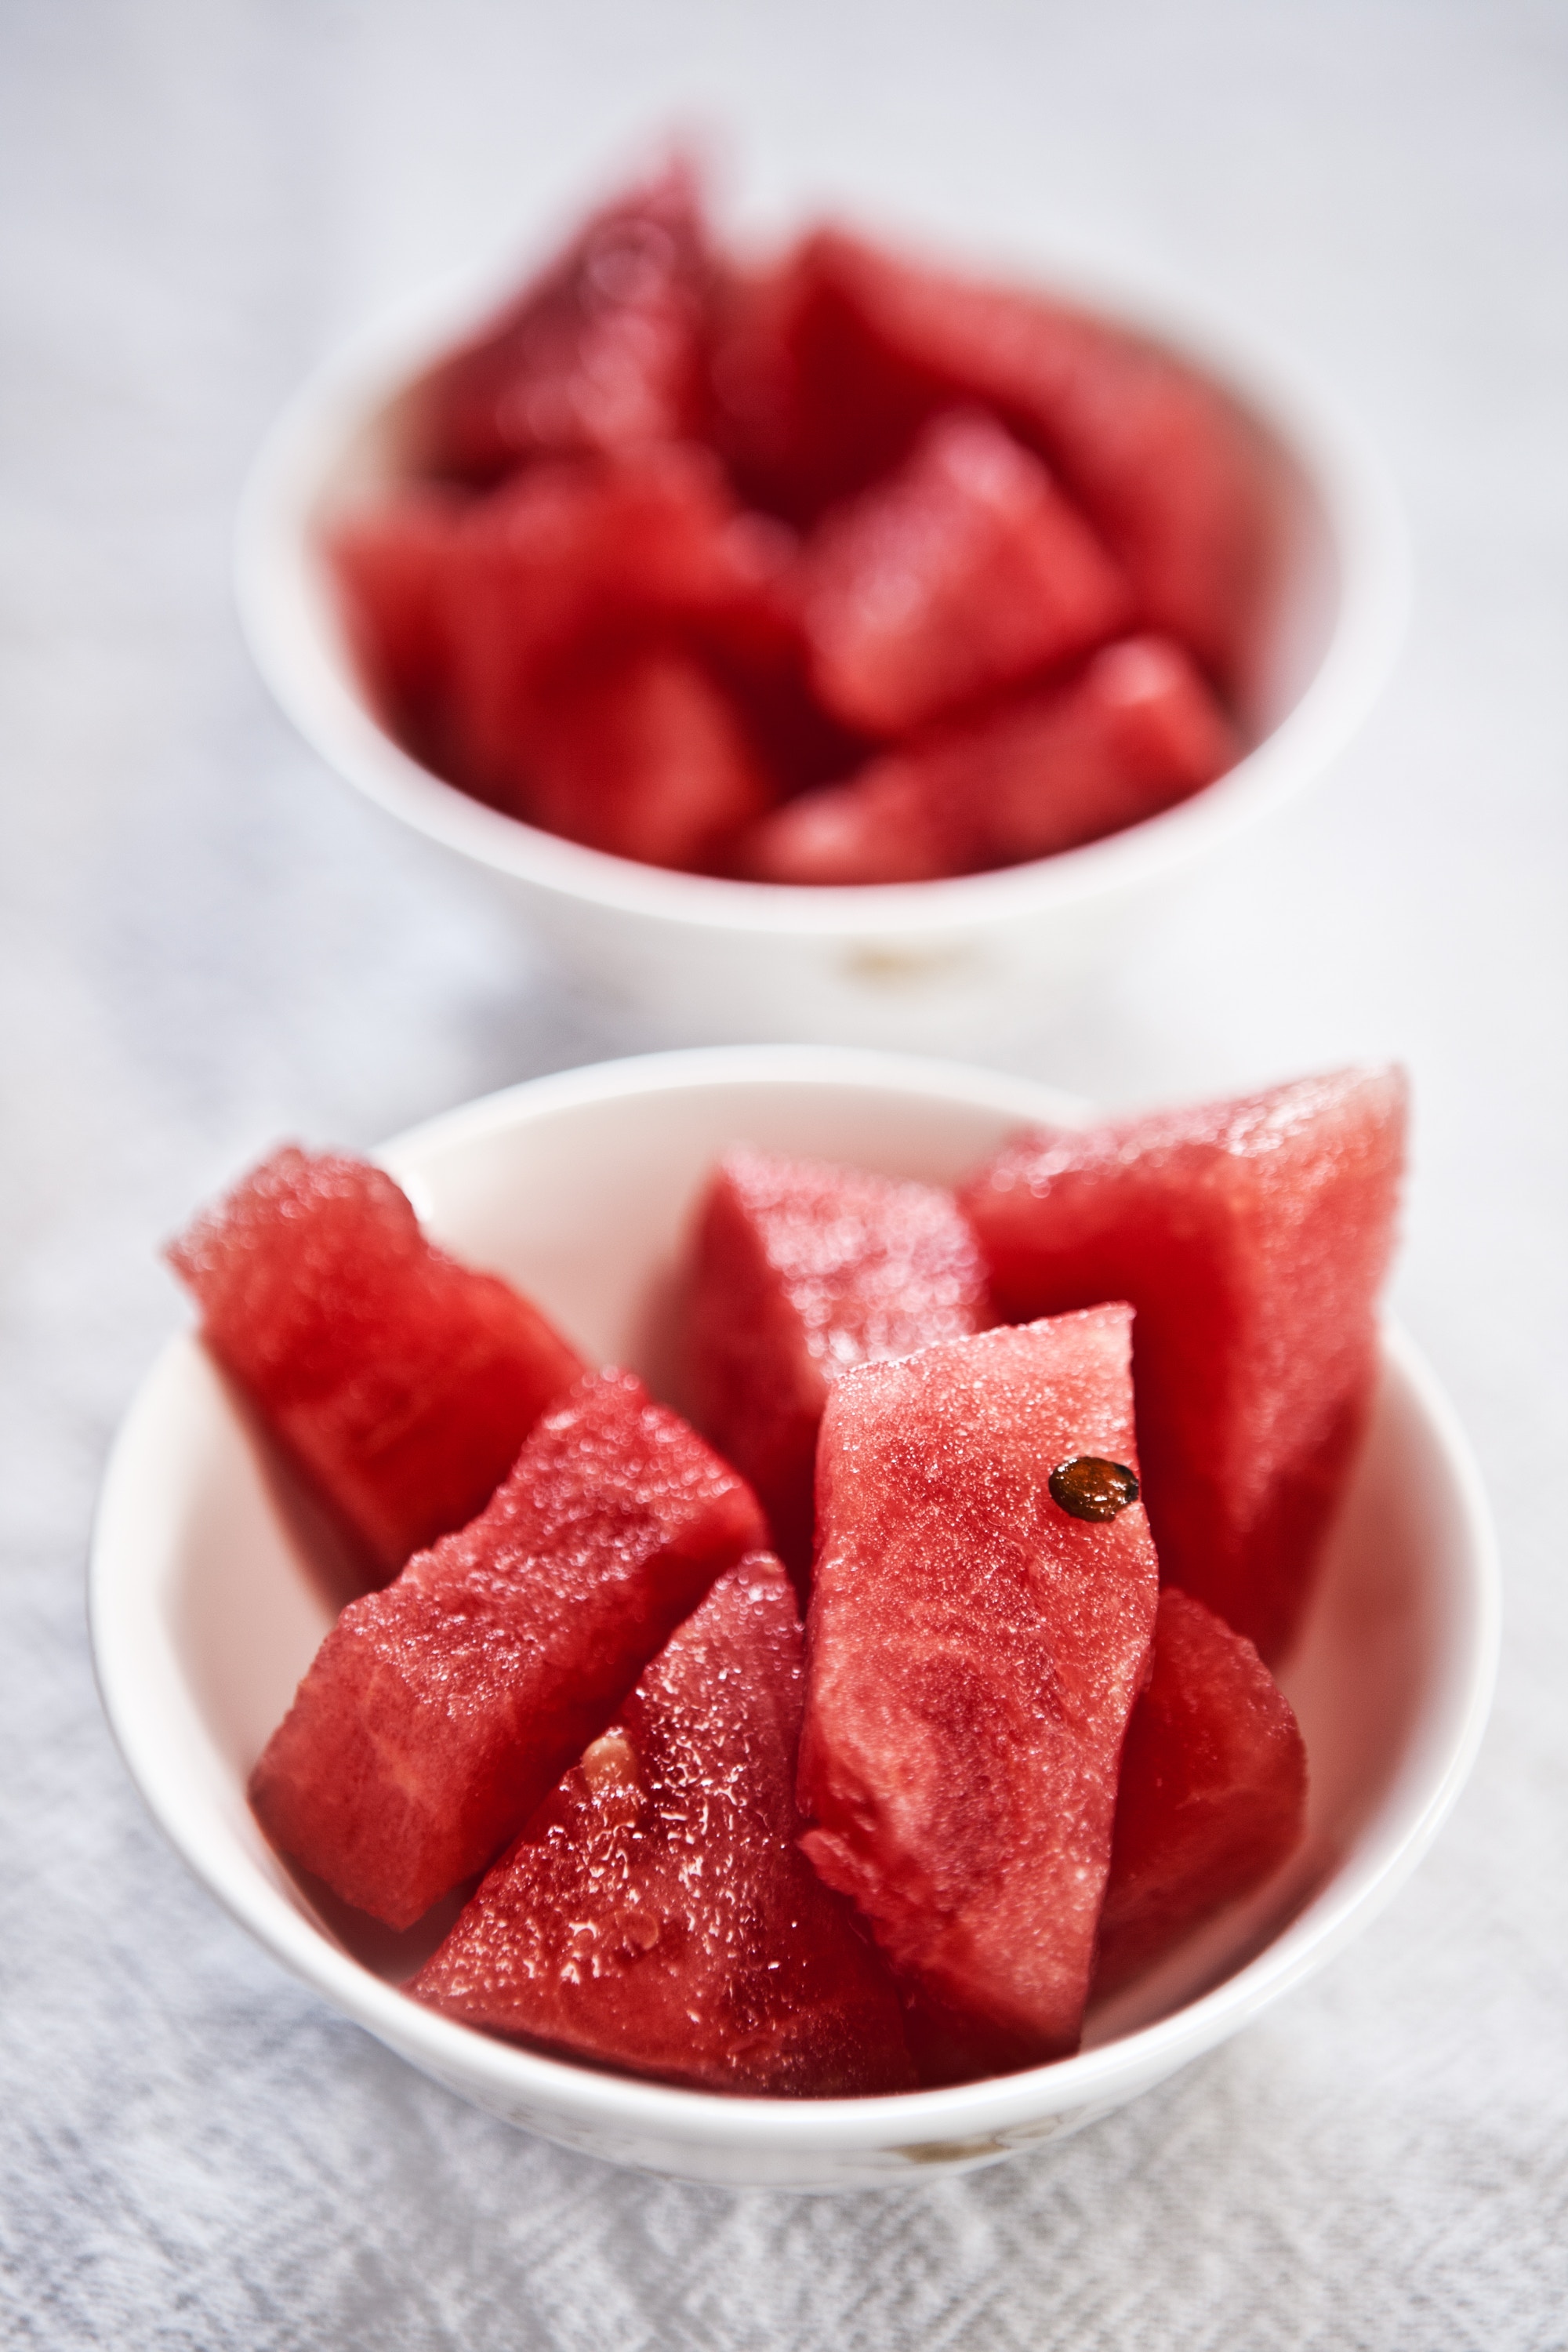 Watermelon in Your Pregnancy Diet